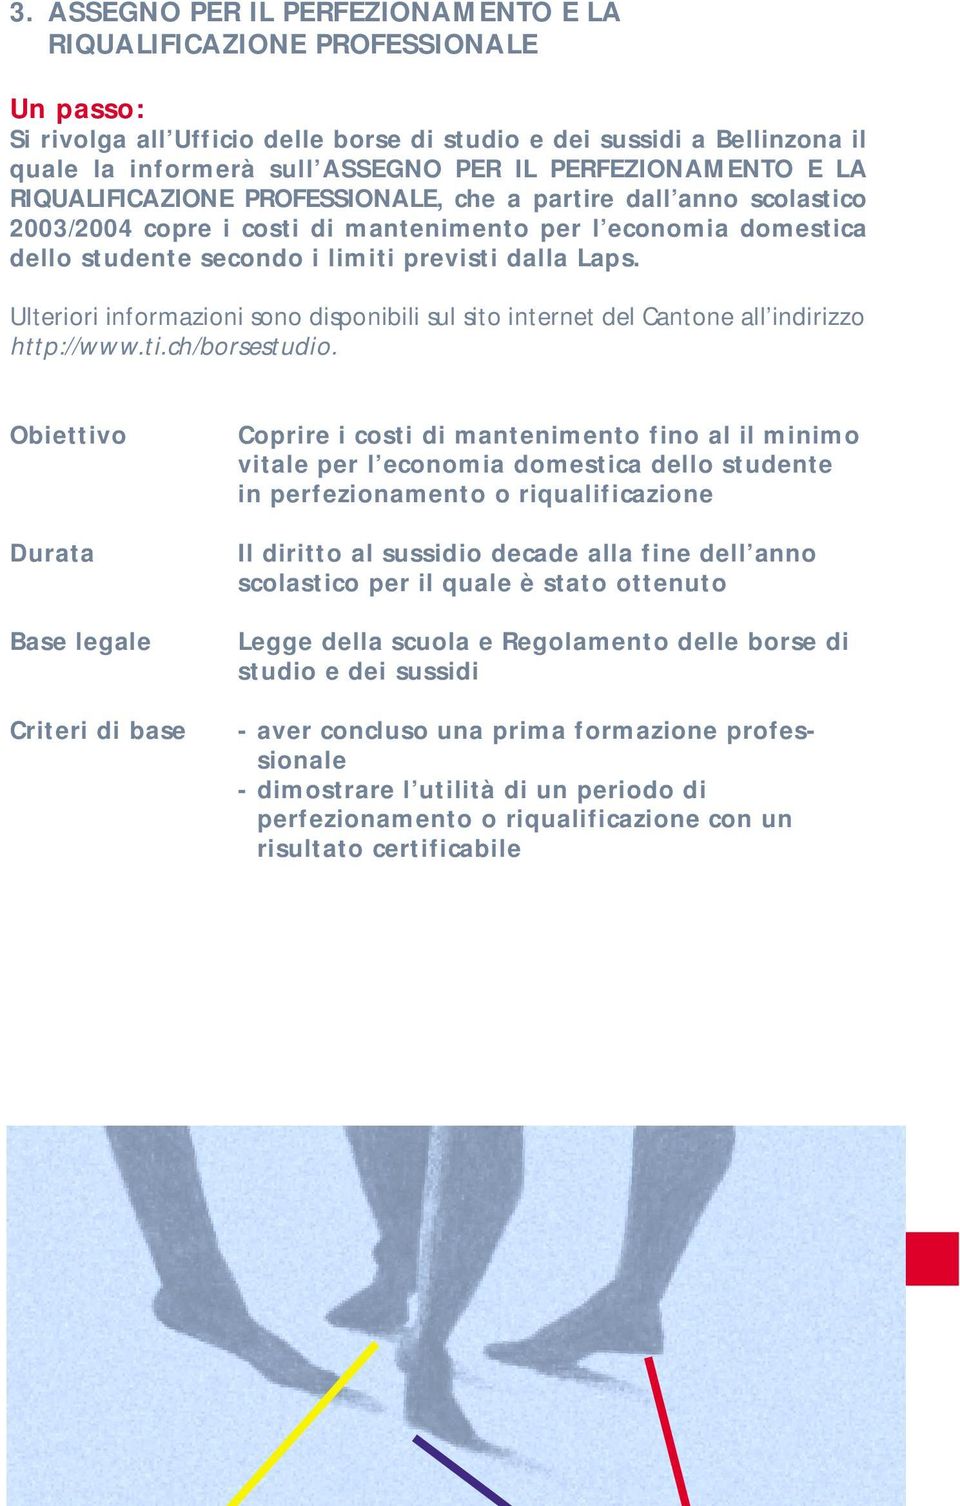 Ulteriori informazioni sono disponibili sul sito internet del Cantone all indirizzo http://www.ti.ch/borsestudio.